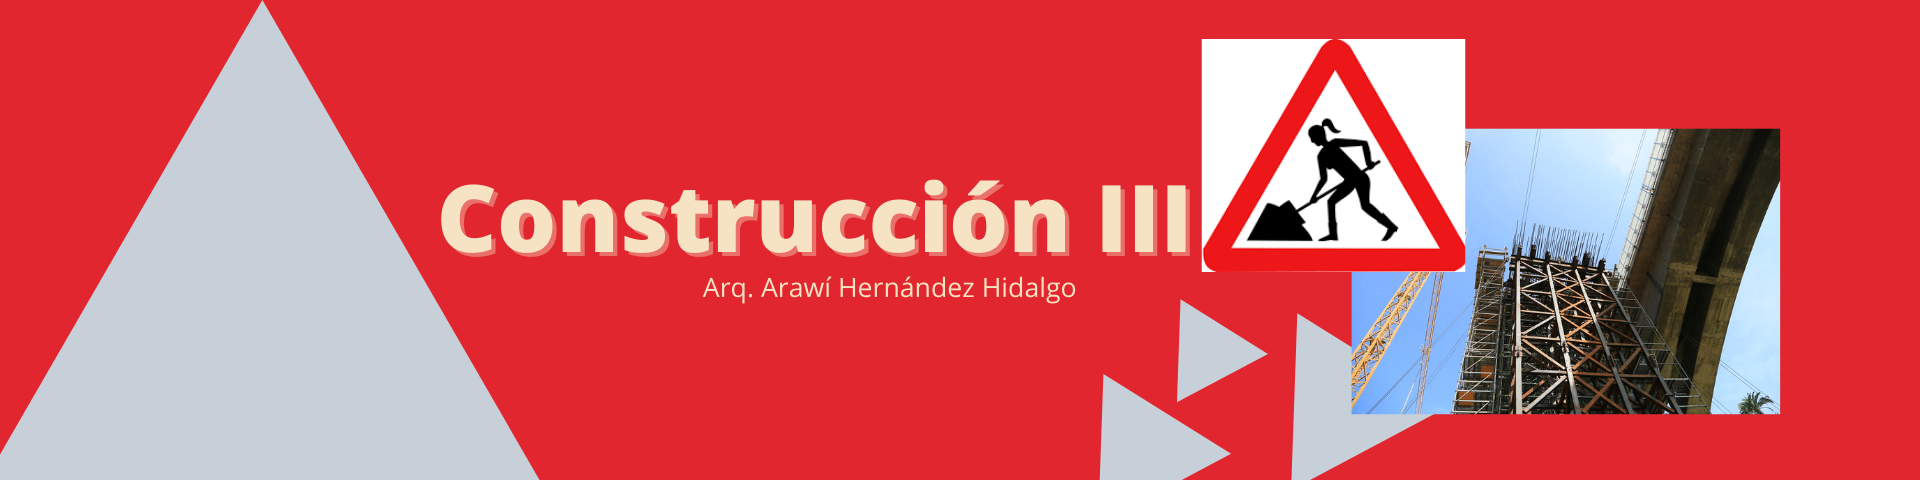 Construcción III_CVL_Arawí HErnández Hidalgo